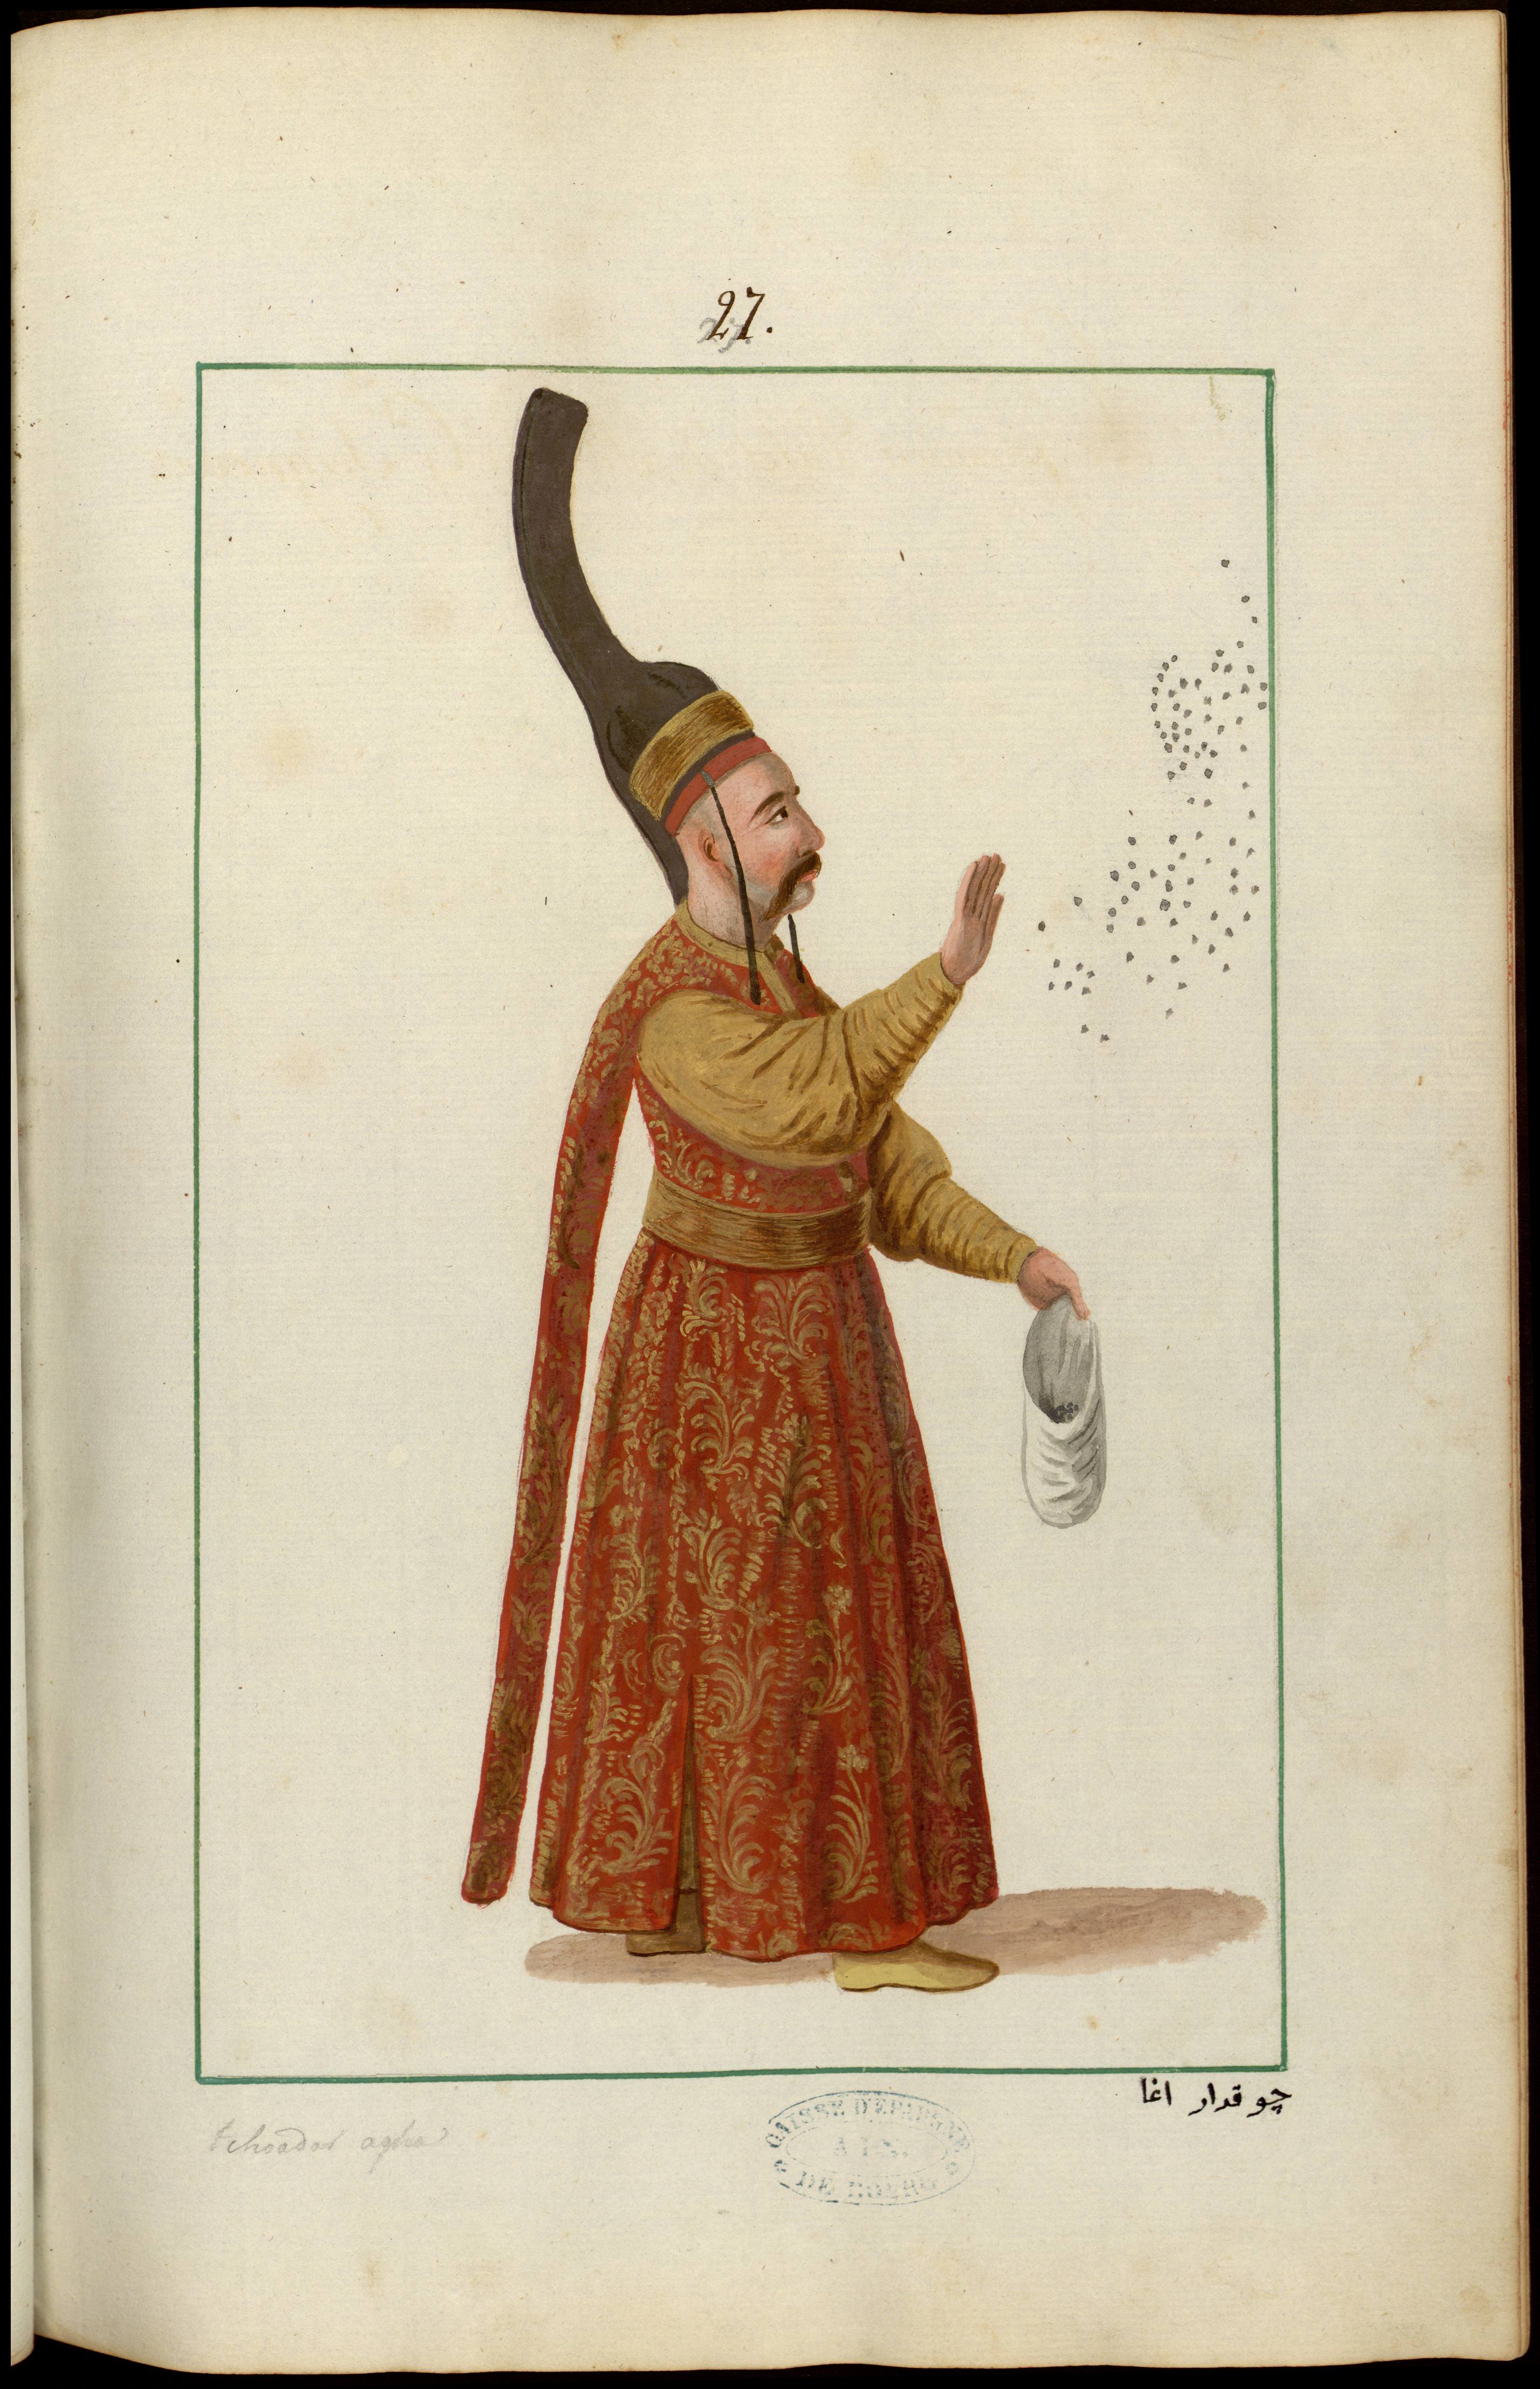 Tchokadar agha le premier valet de pied du grand seigneur, le sultan